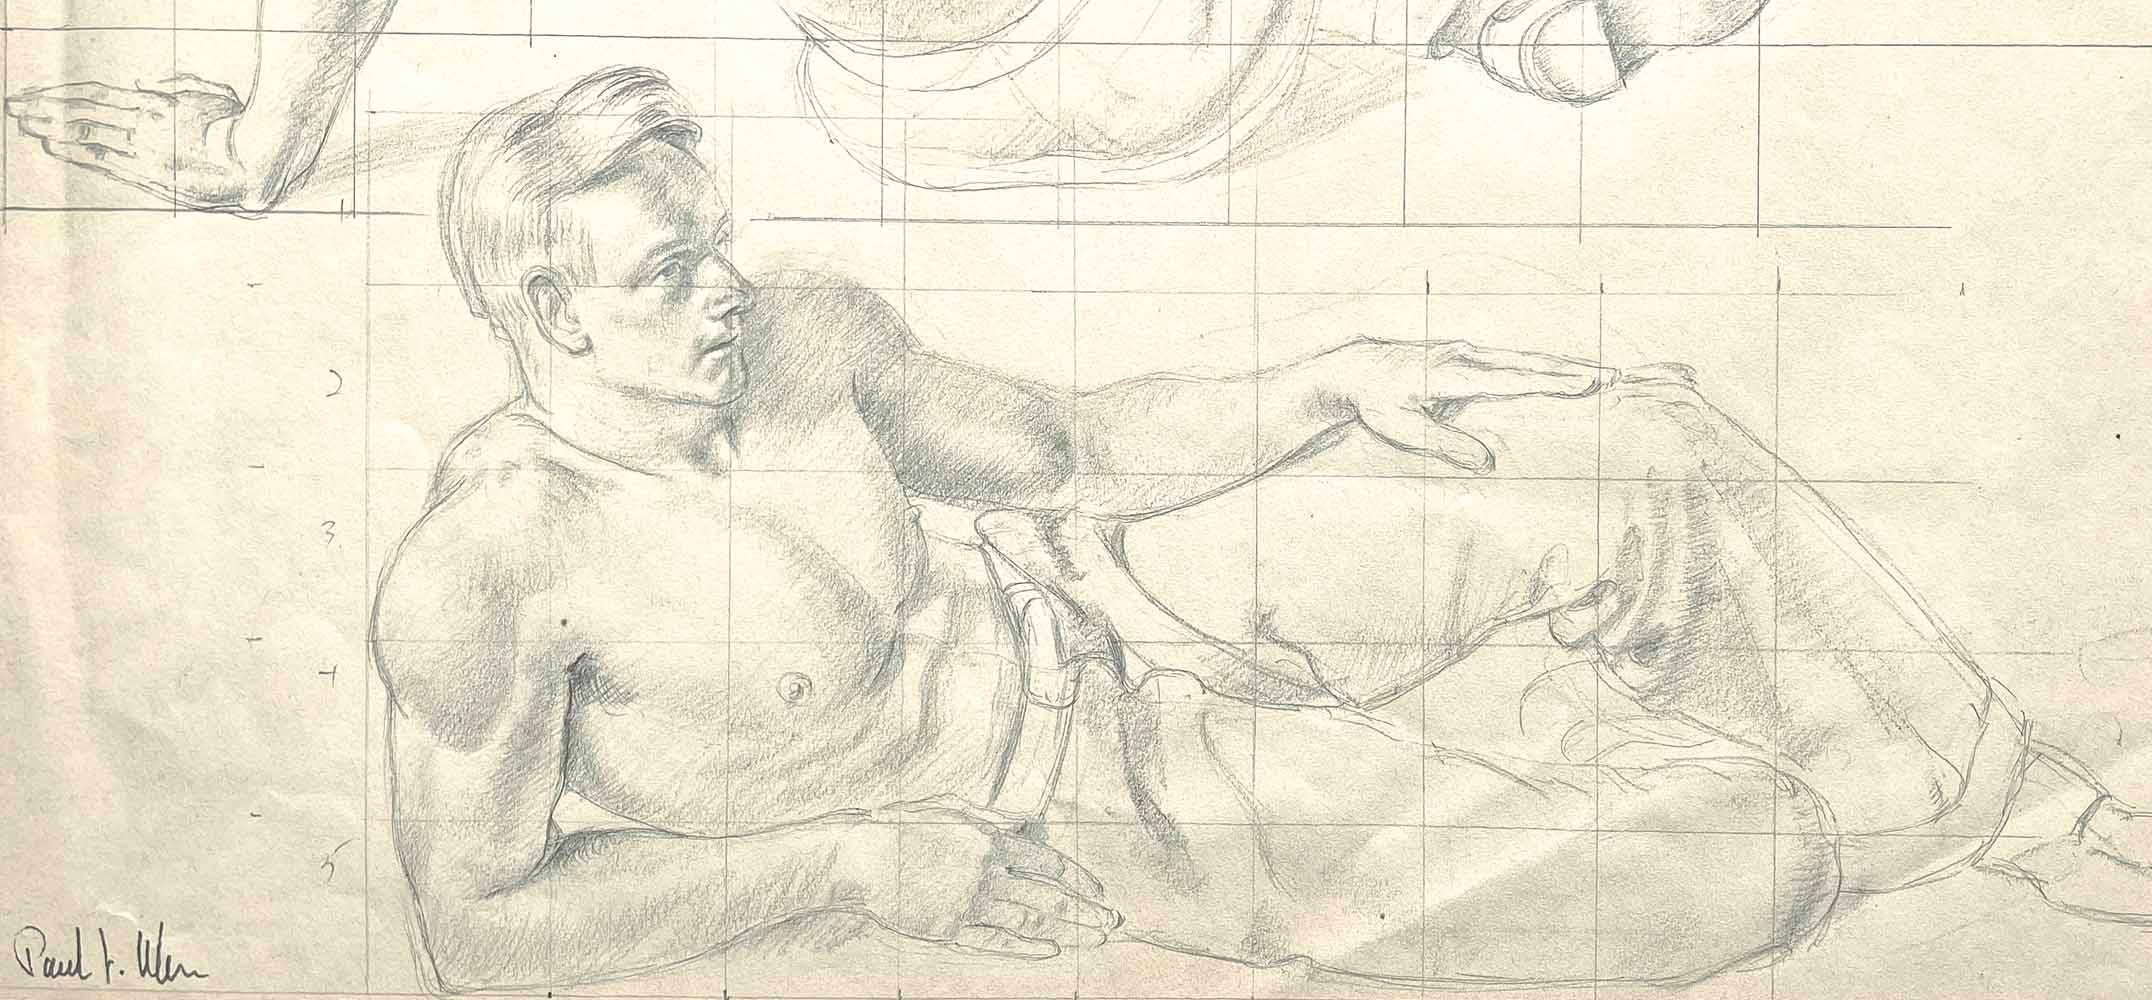 Dessinée avec beauté et sensibilité par Paul Ulen, cette feuille unique comprend deux images d'un personnage masculin à moitié nu, assis et allongé, portant un pantalon de travailleur ample et arborant une coupe de cheveux à la mode des années 1930.